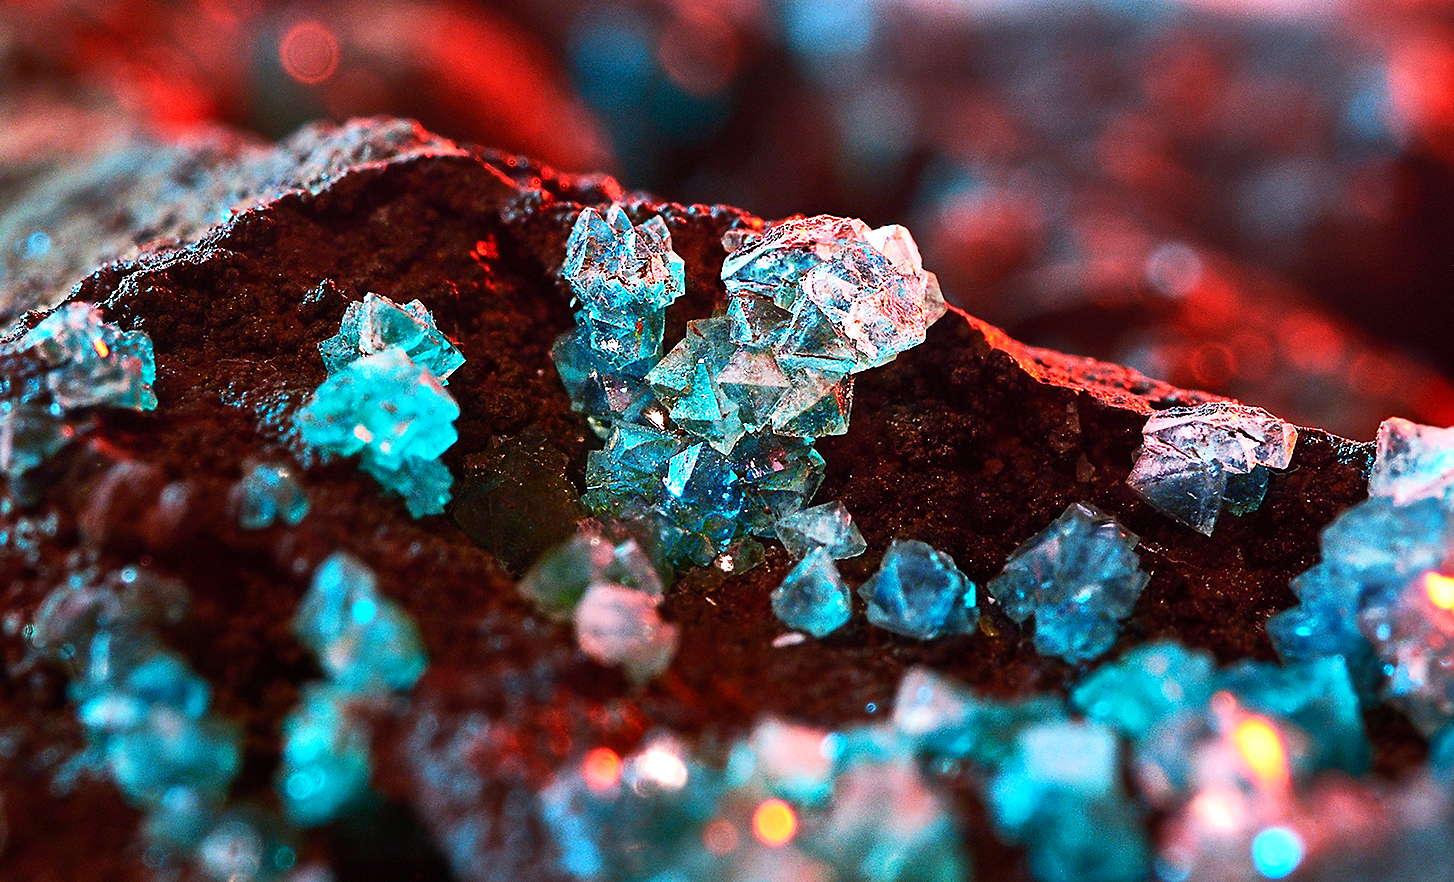 Capture d'écran montrant des cristaux rouges, turquoise et transparents